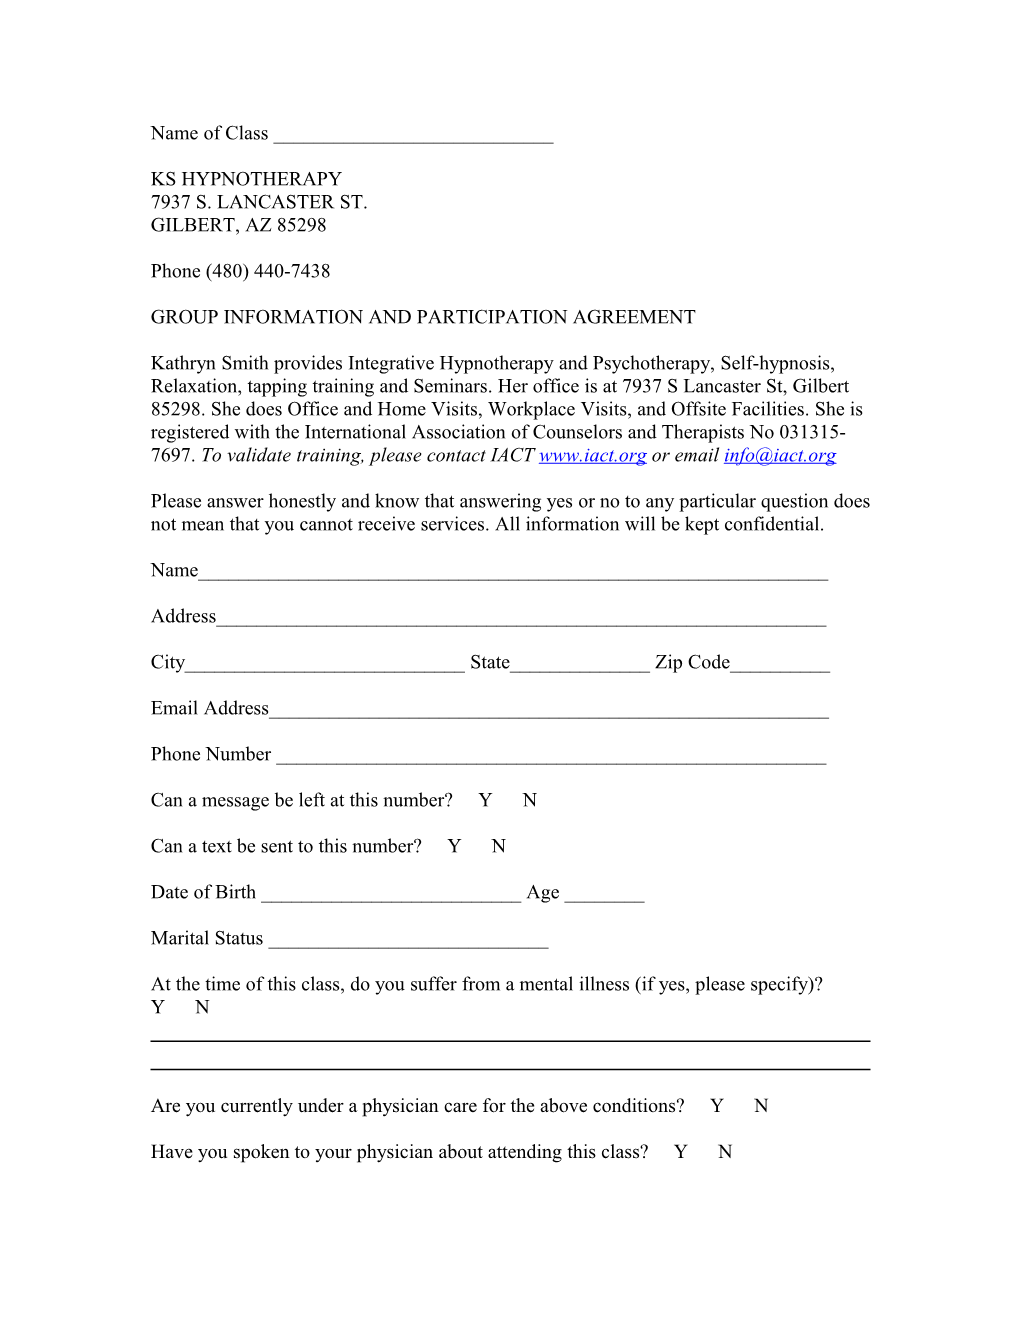 Group Participation Consent Form